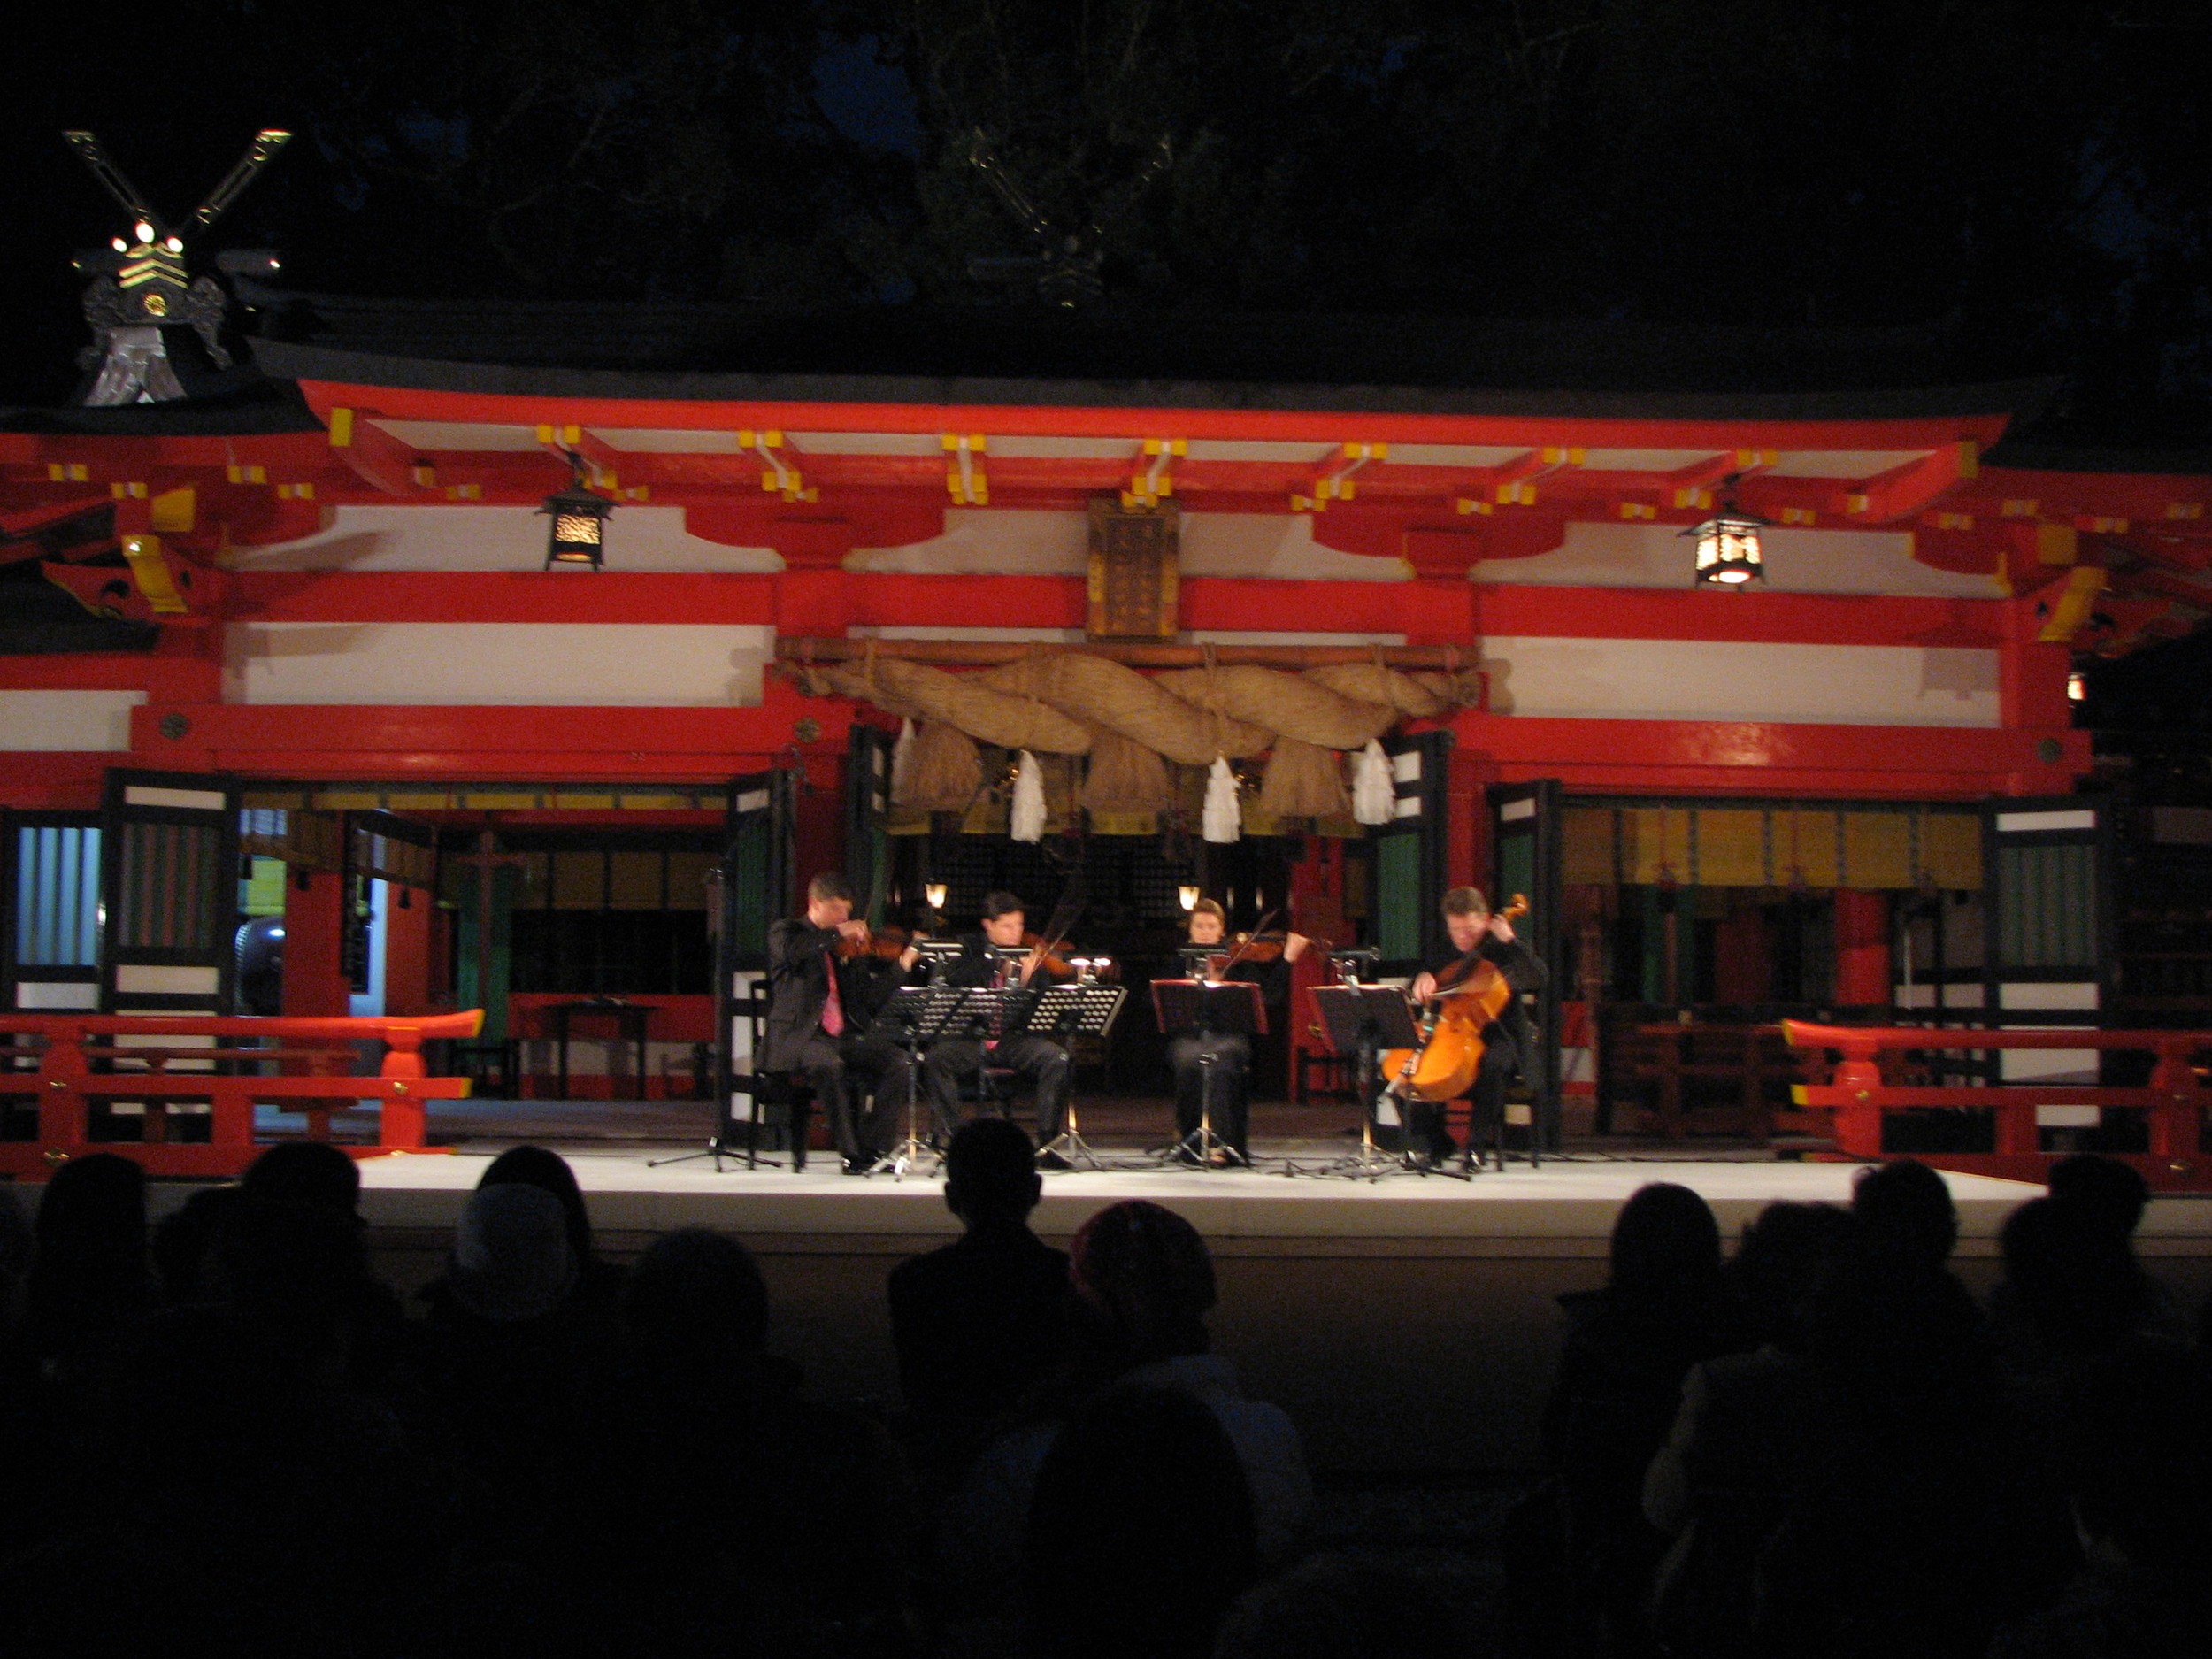 UNESCO world heritage celebration at the Hayatama shrine in Japan